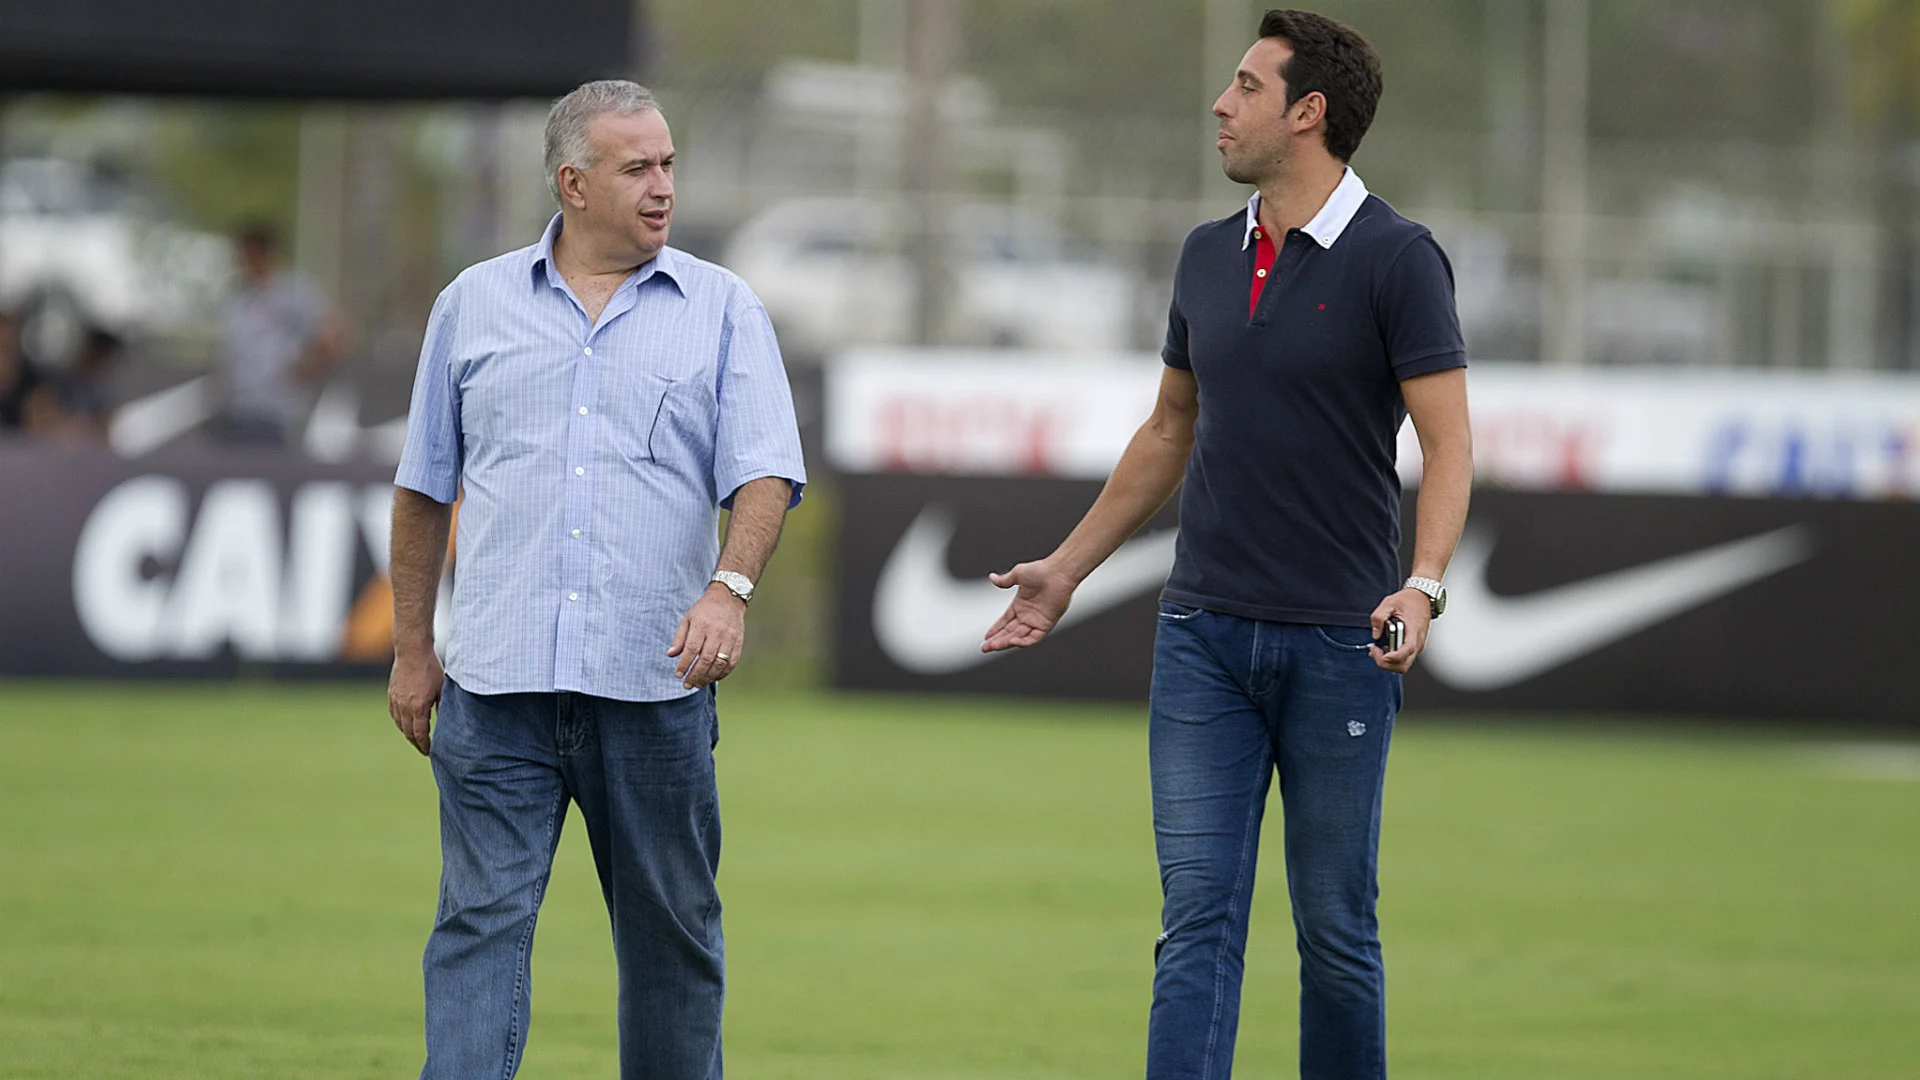 EXCLUSIVO: Com mercado sem opções, Corinthians não deverá trazer mais reforços em 2015